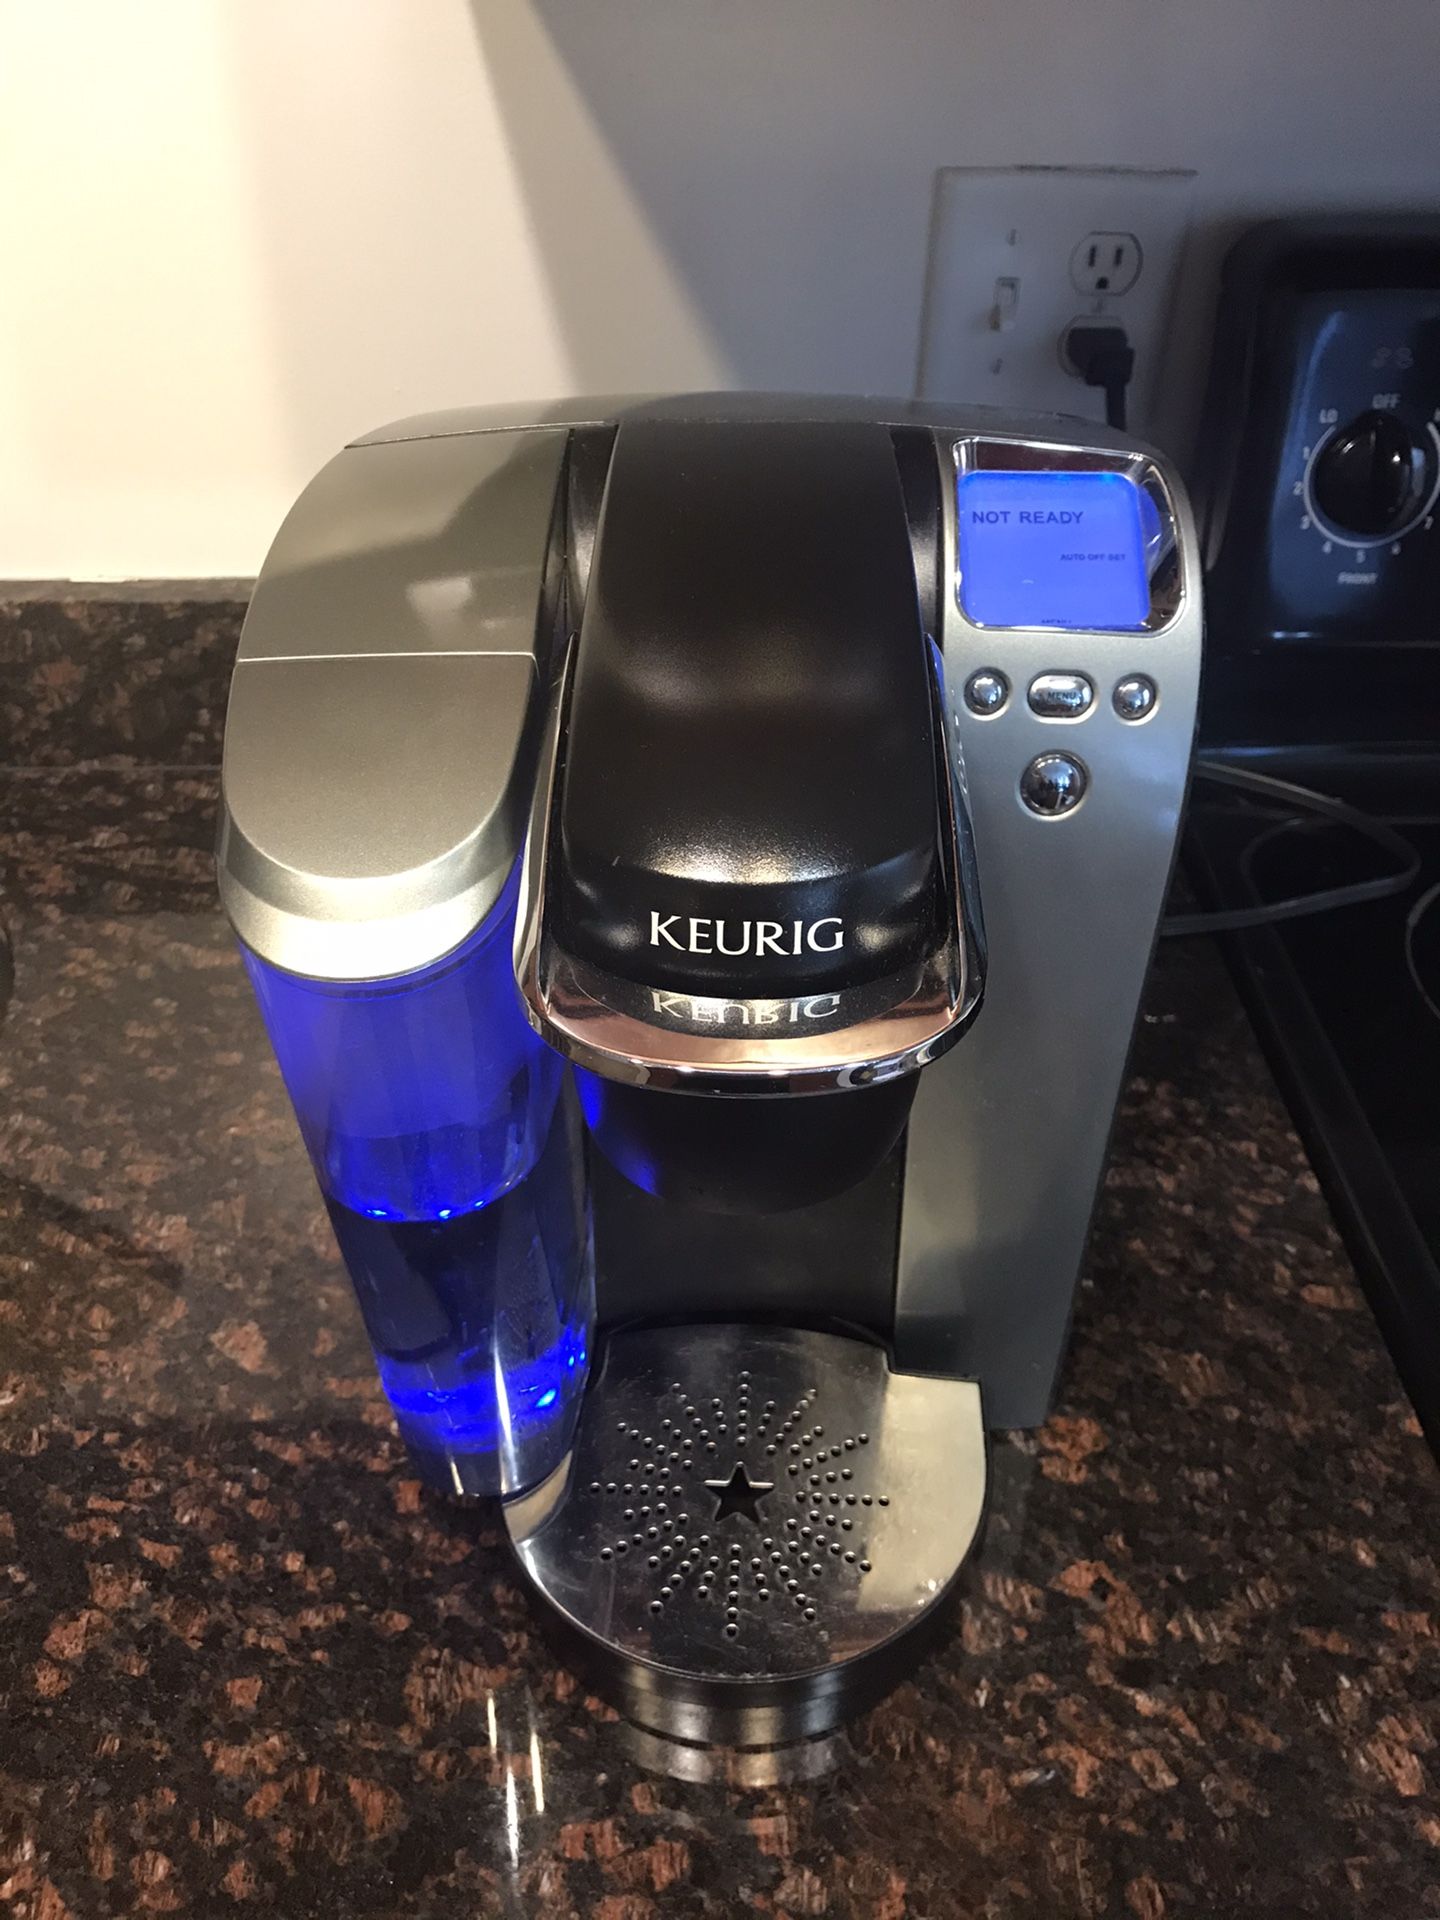 Keurig K70 coffee maker